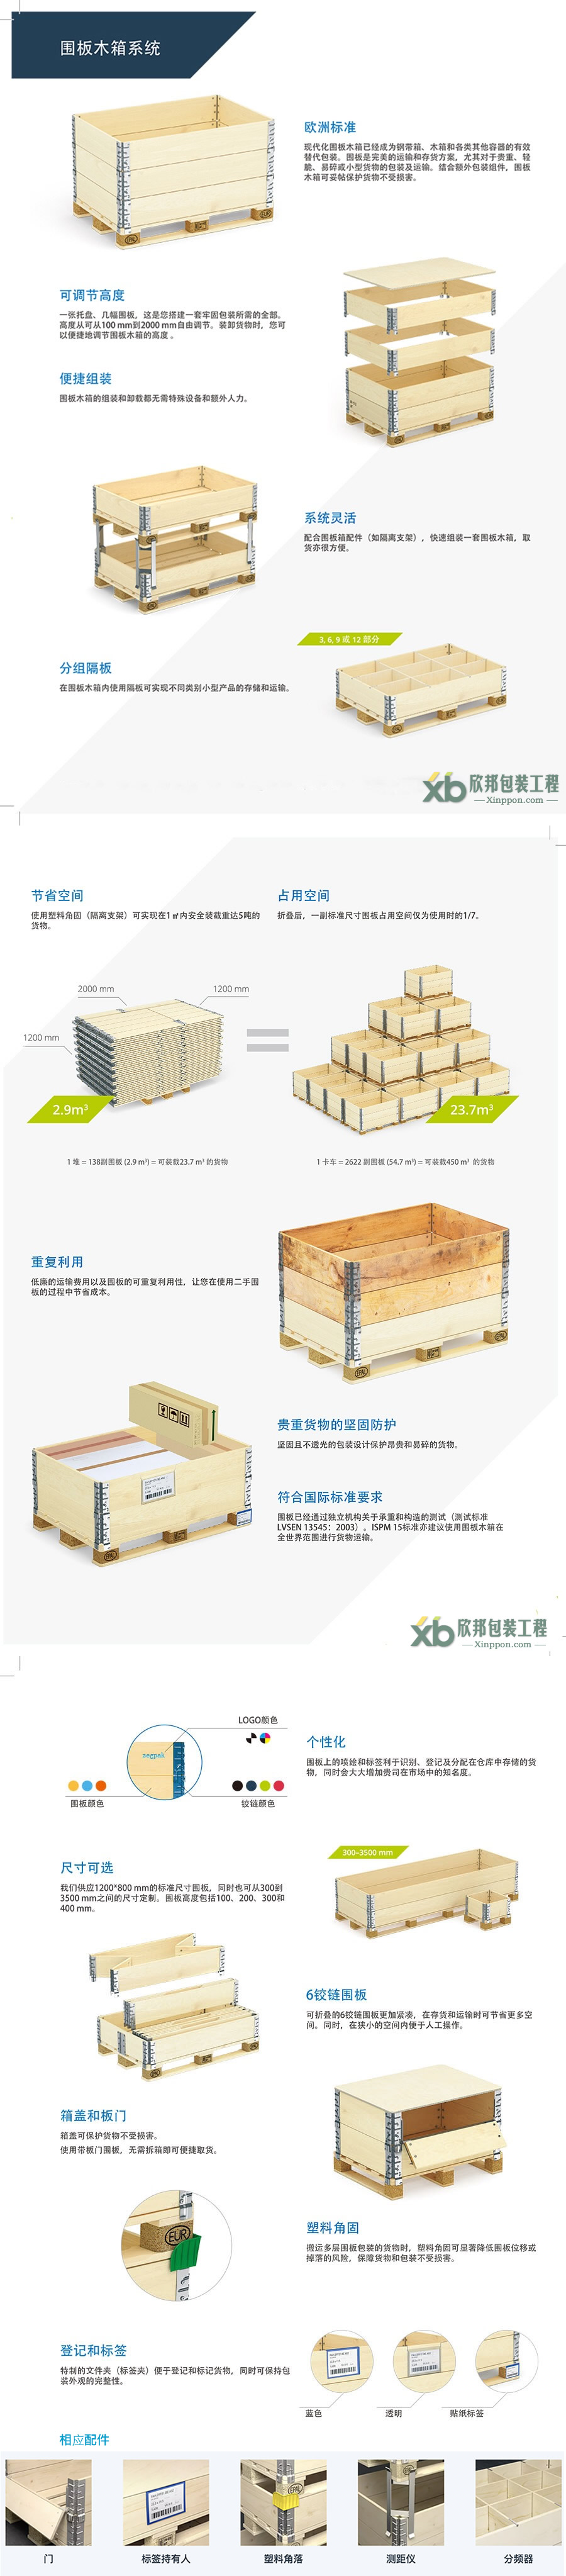 杭州木箱,杭州木箱�S,杭州木箱包�b,��板箱